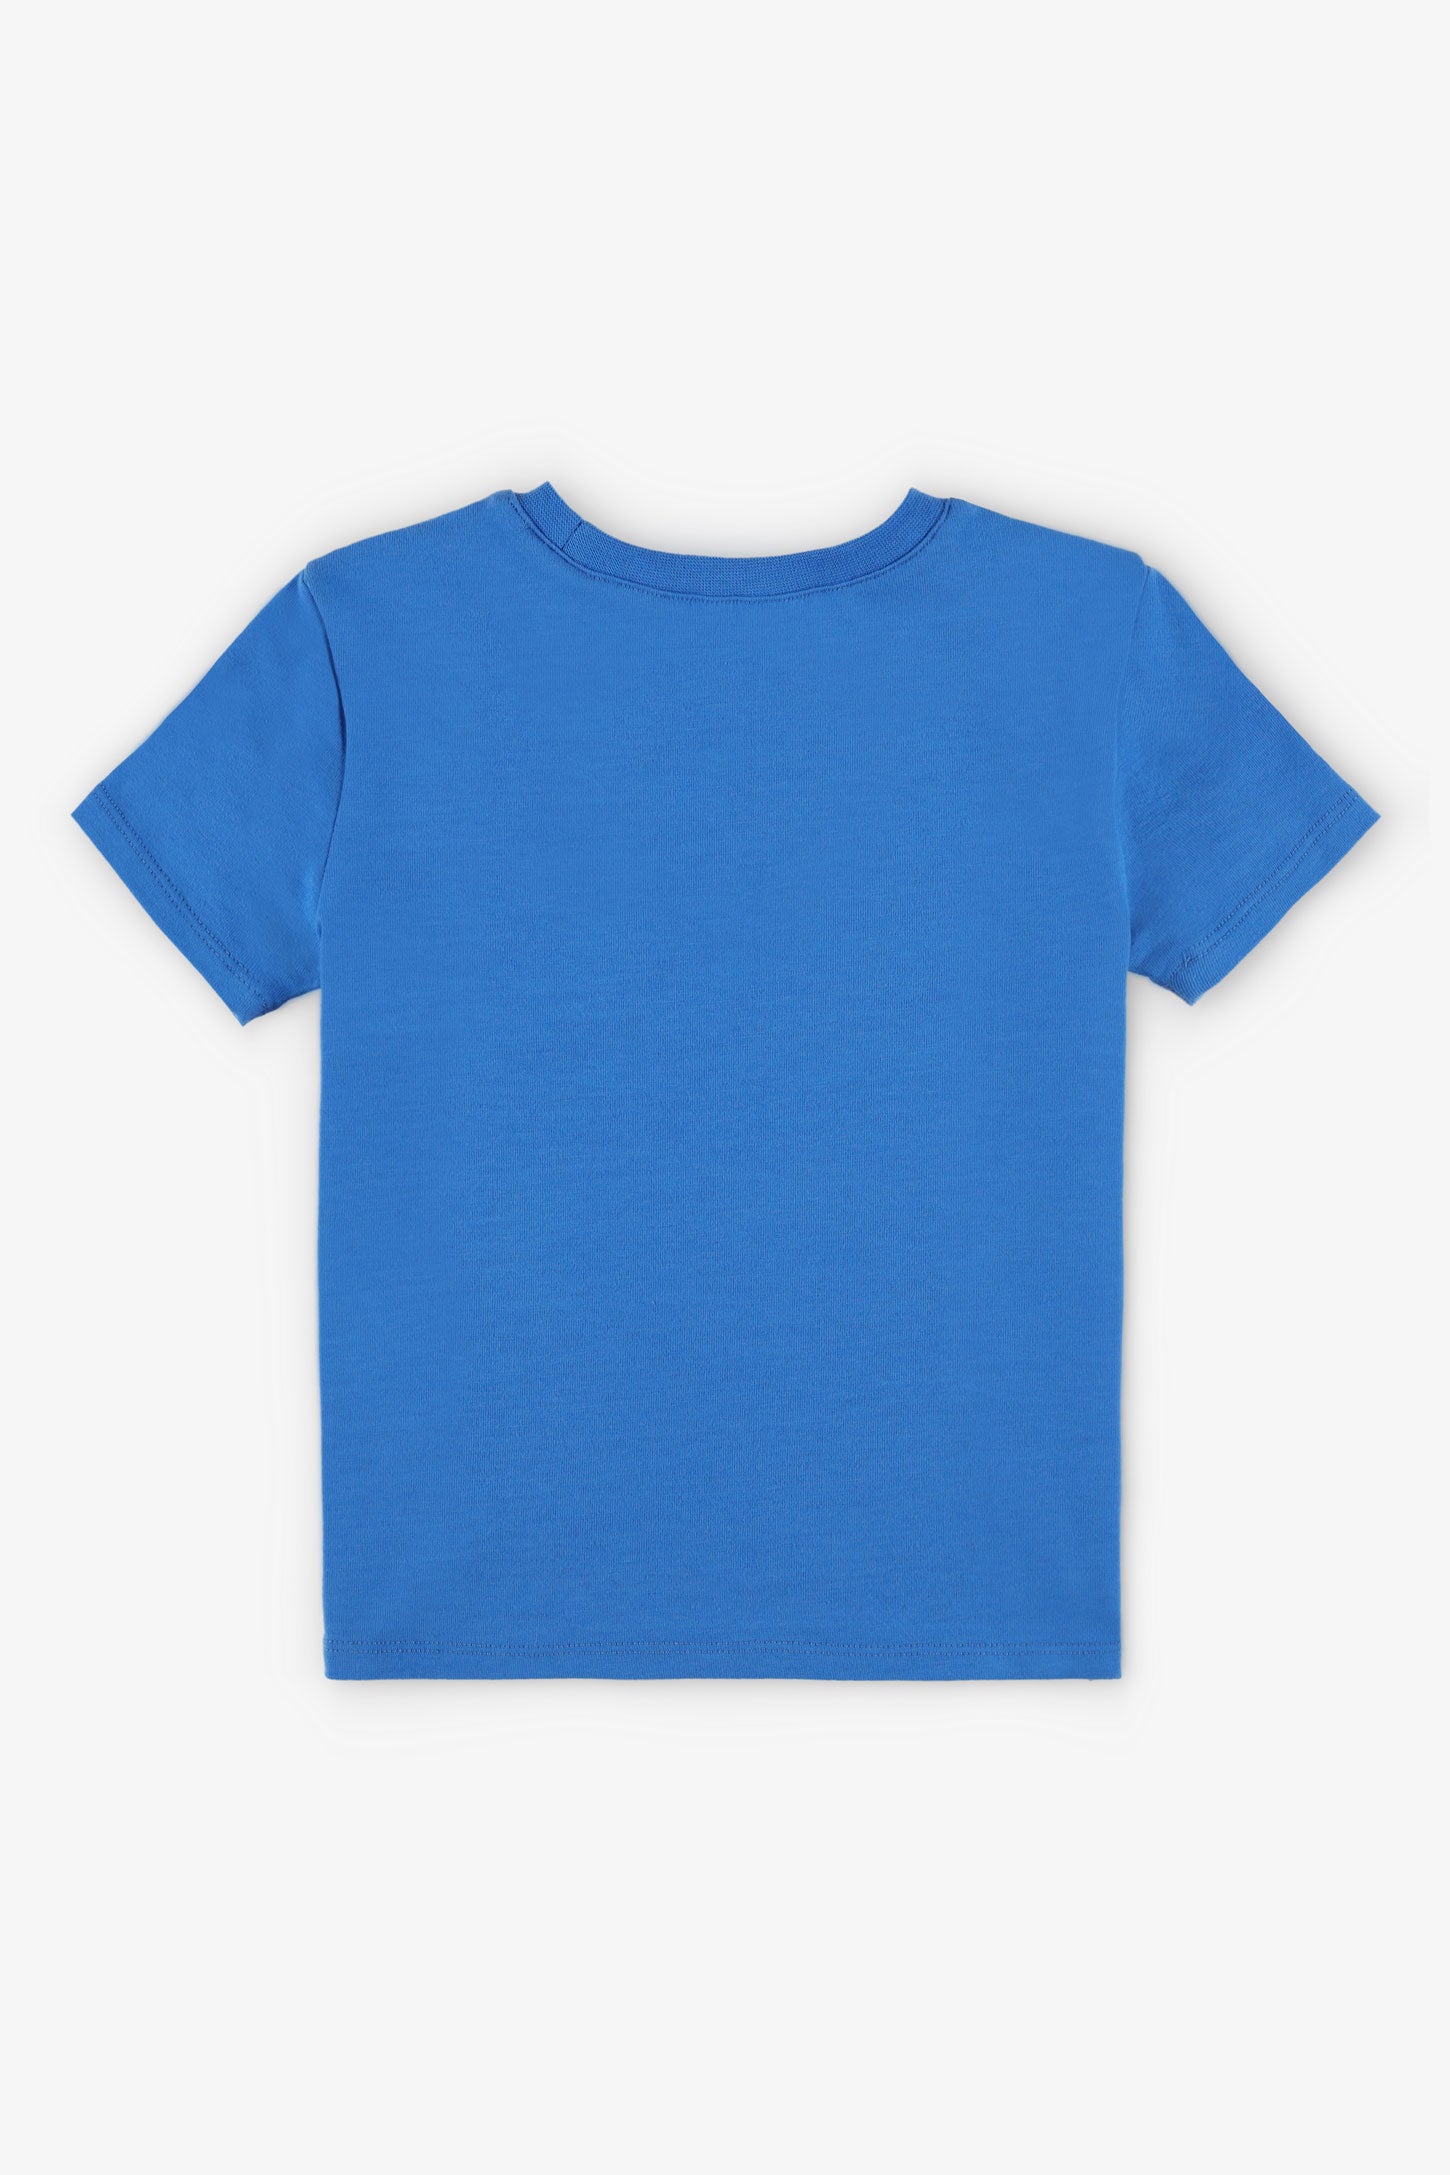 T-shirt rond coupe droite coton, 2T-3T, 2/15$ - Bébé garçon && BLEU